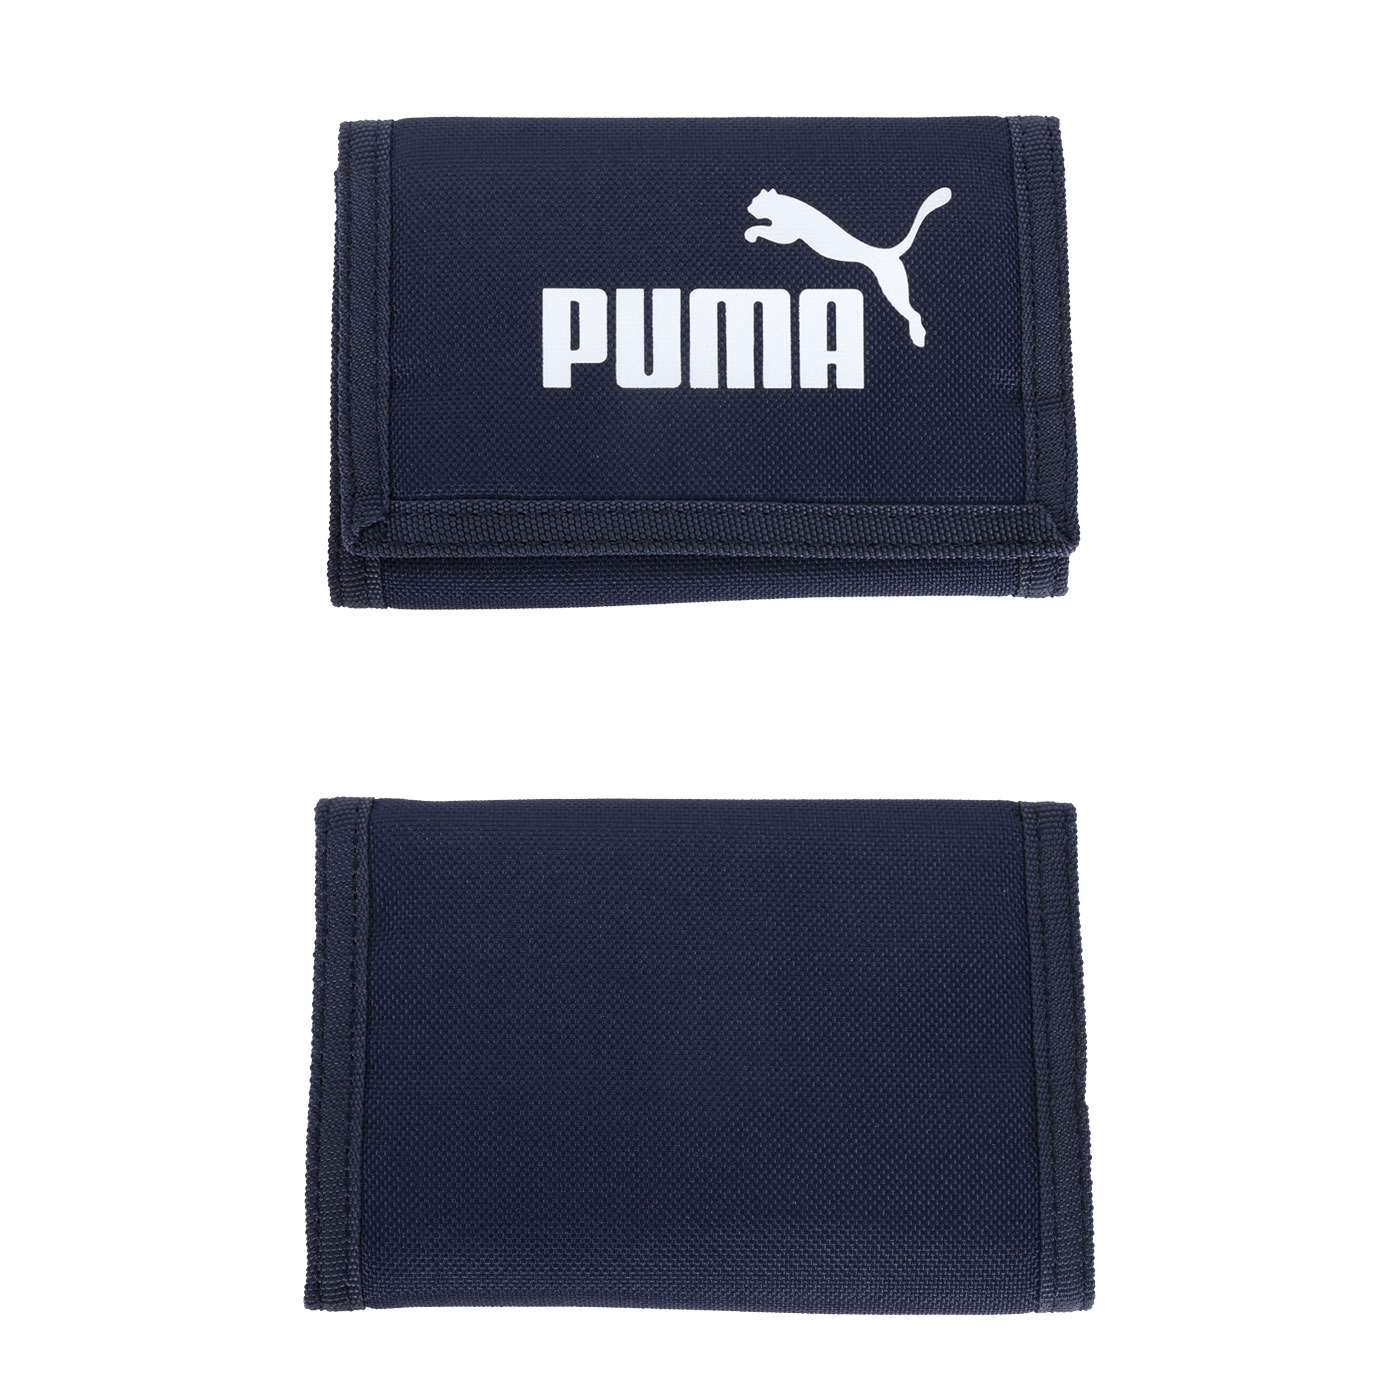 PUMA Phase皮夾  07995102